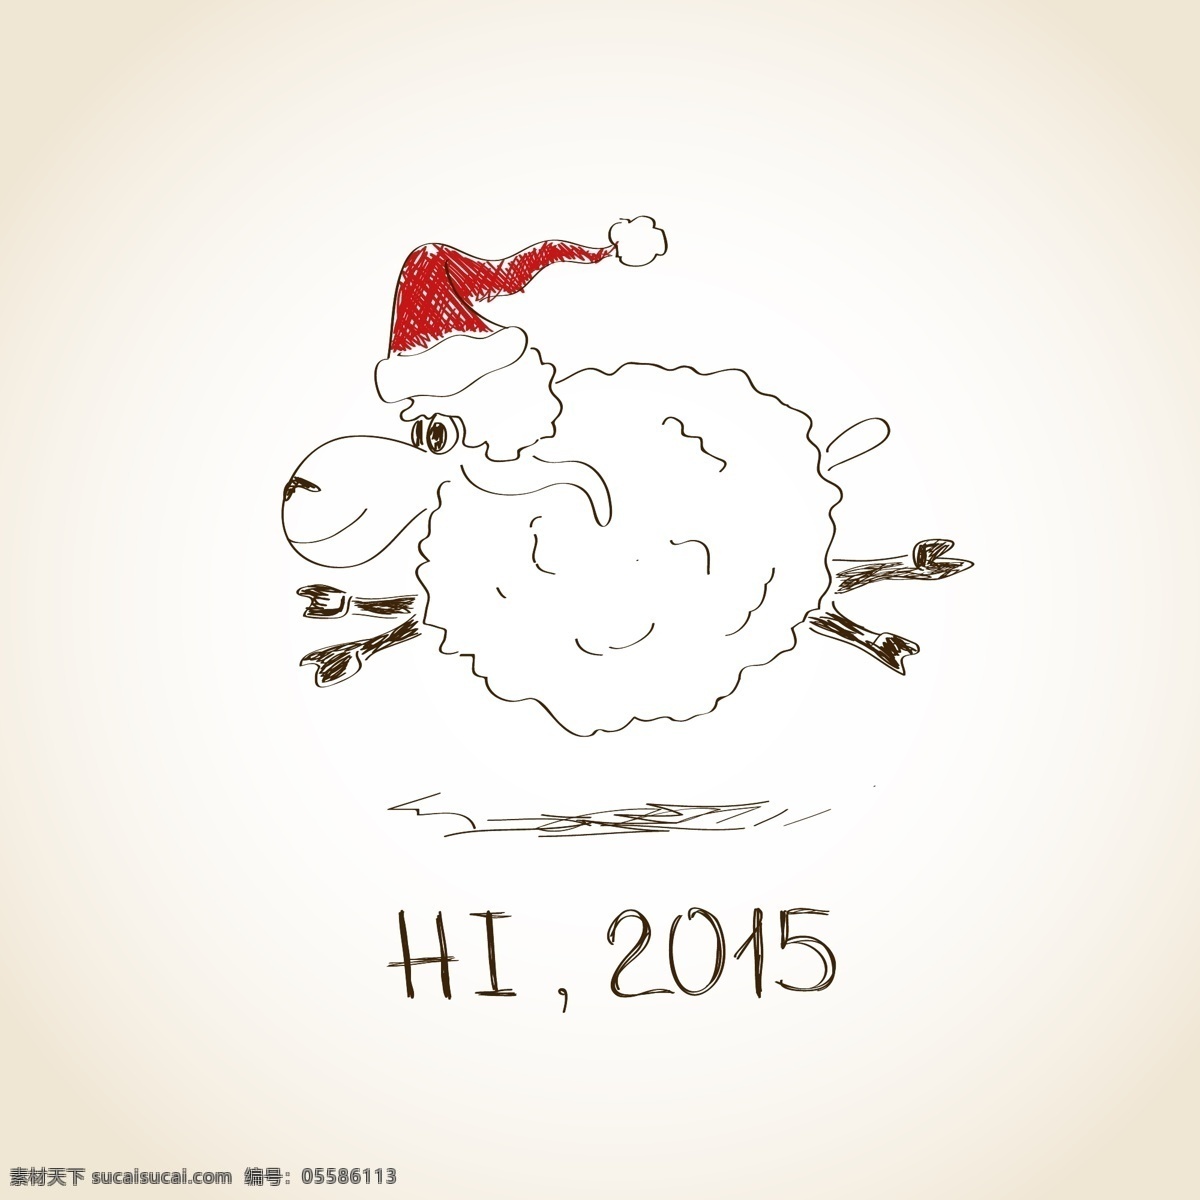 2015 手绘 绵羊 背景 矢量 eps格式 矢量图 线描 新年快乐 羊年 节日素材 2015羊年